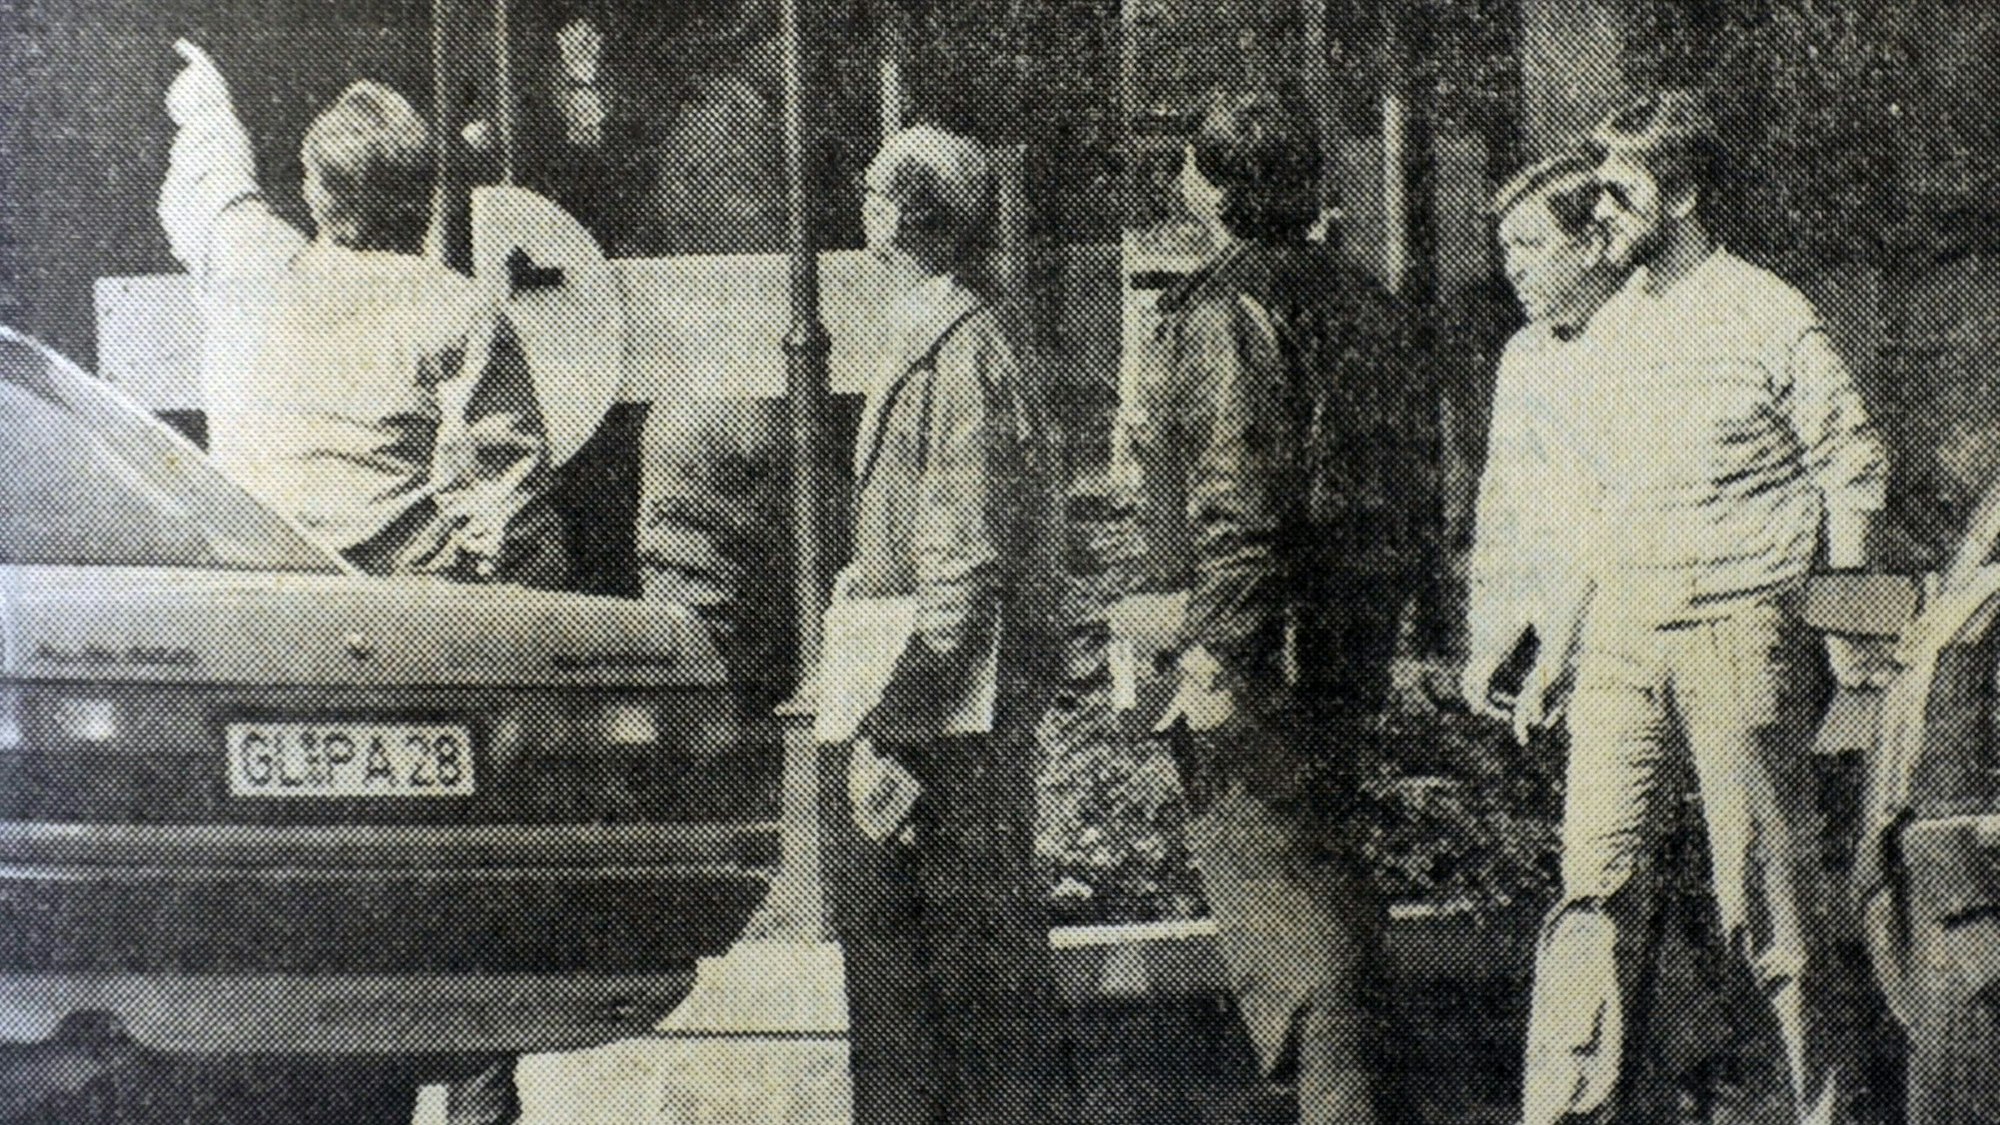 Männer in Kleidung der 80er Jahre. Ein altes Foto in Schwarz-Weiß aus einer Zeitung.